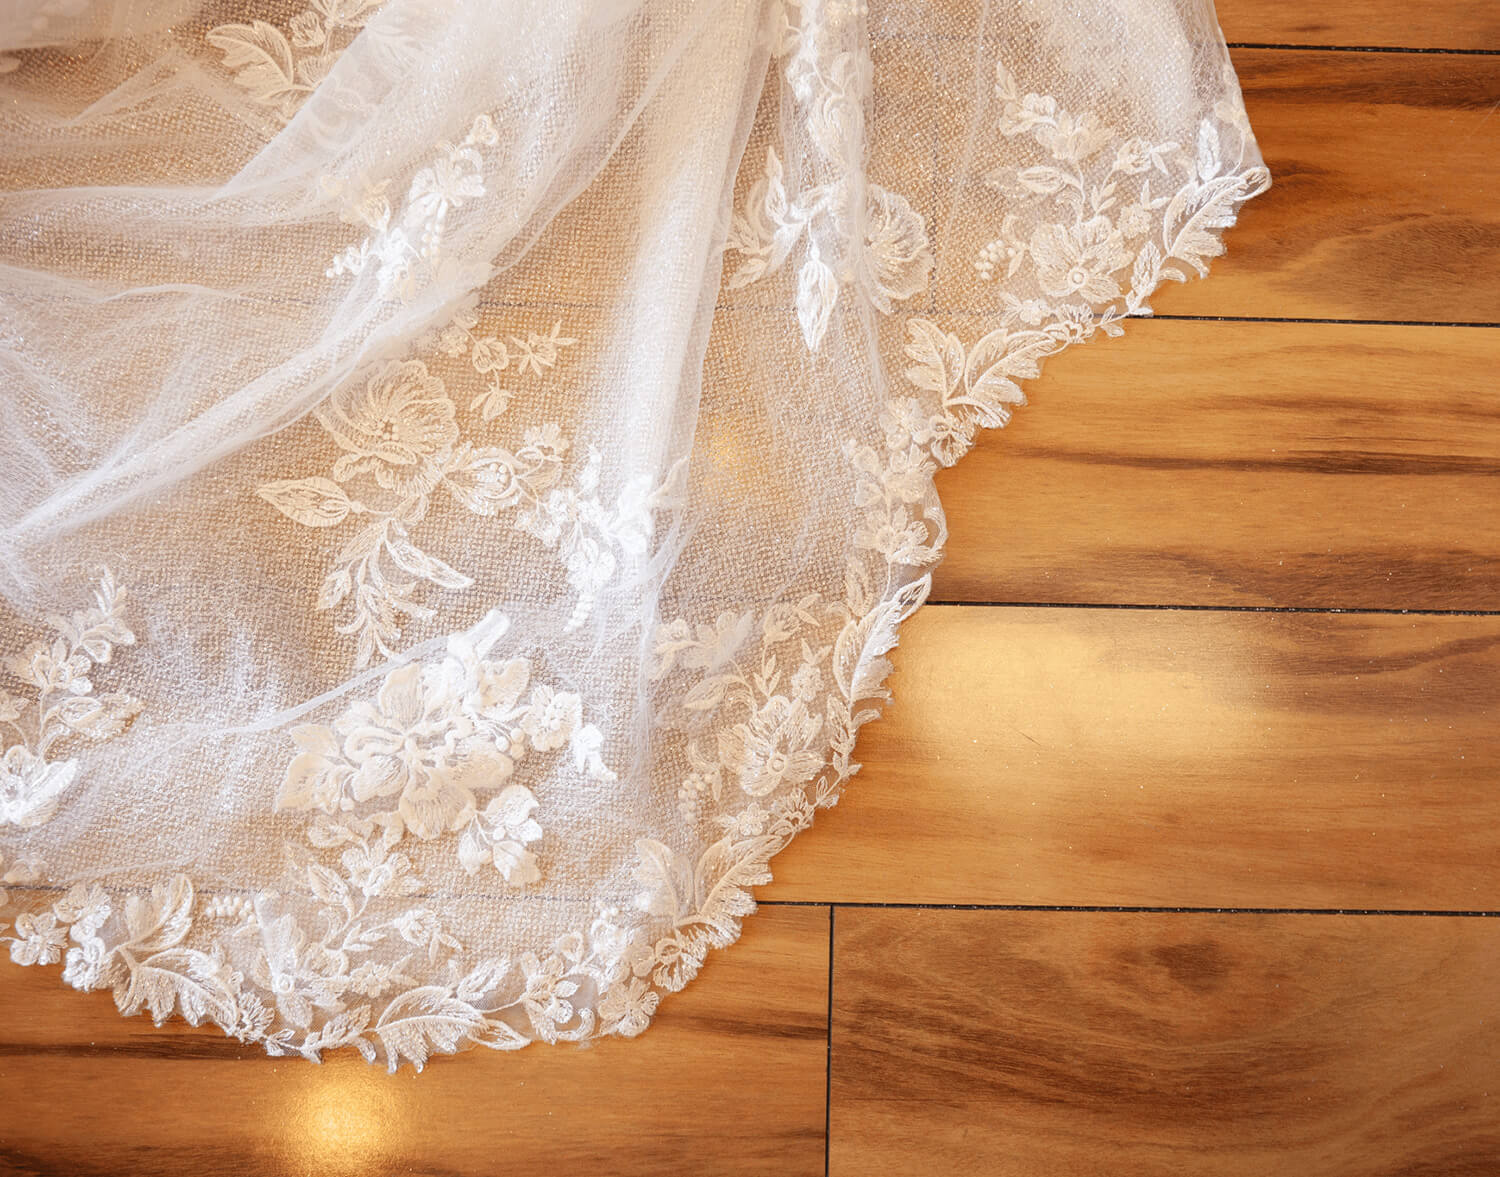 Bridal Dress on Wooden Floor. Mobile Image